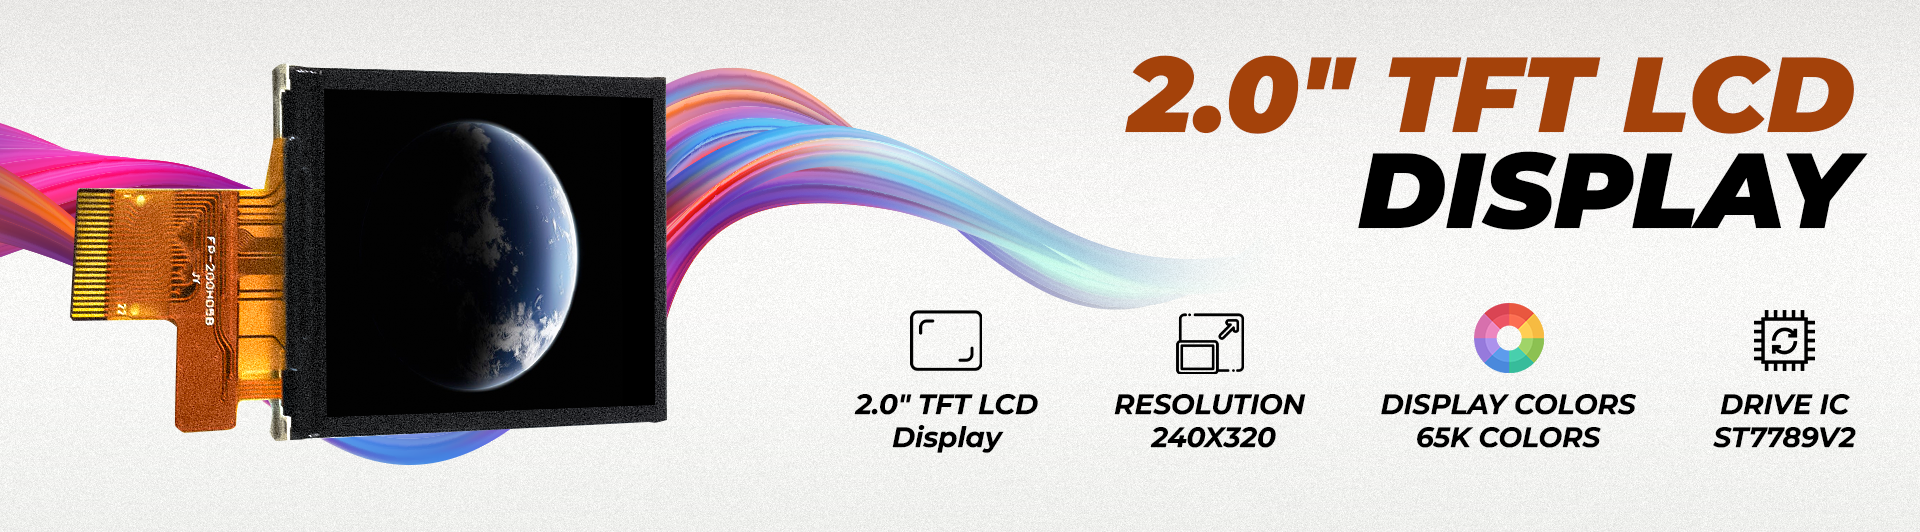 2.0" TFT LCD Display